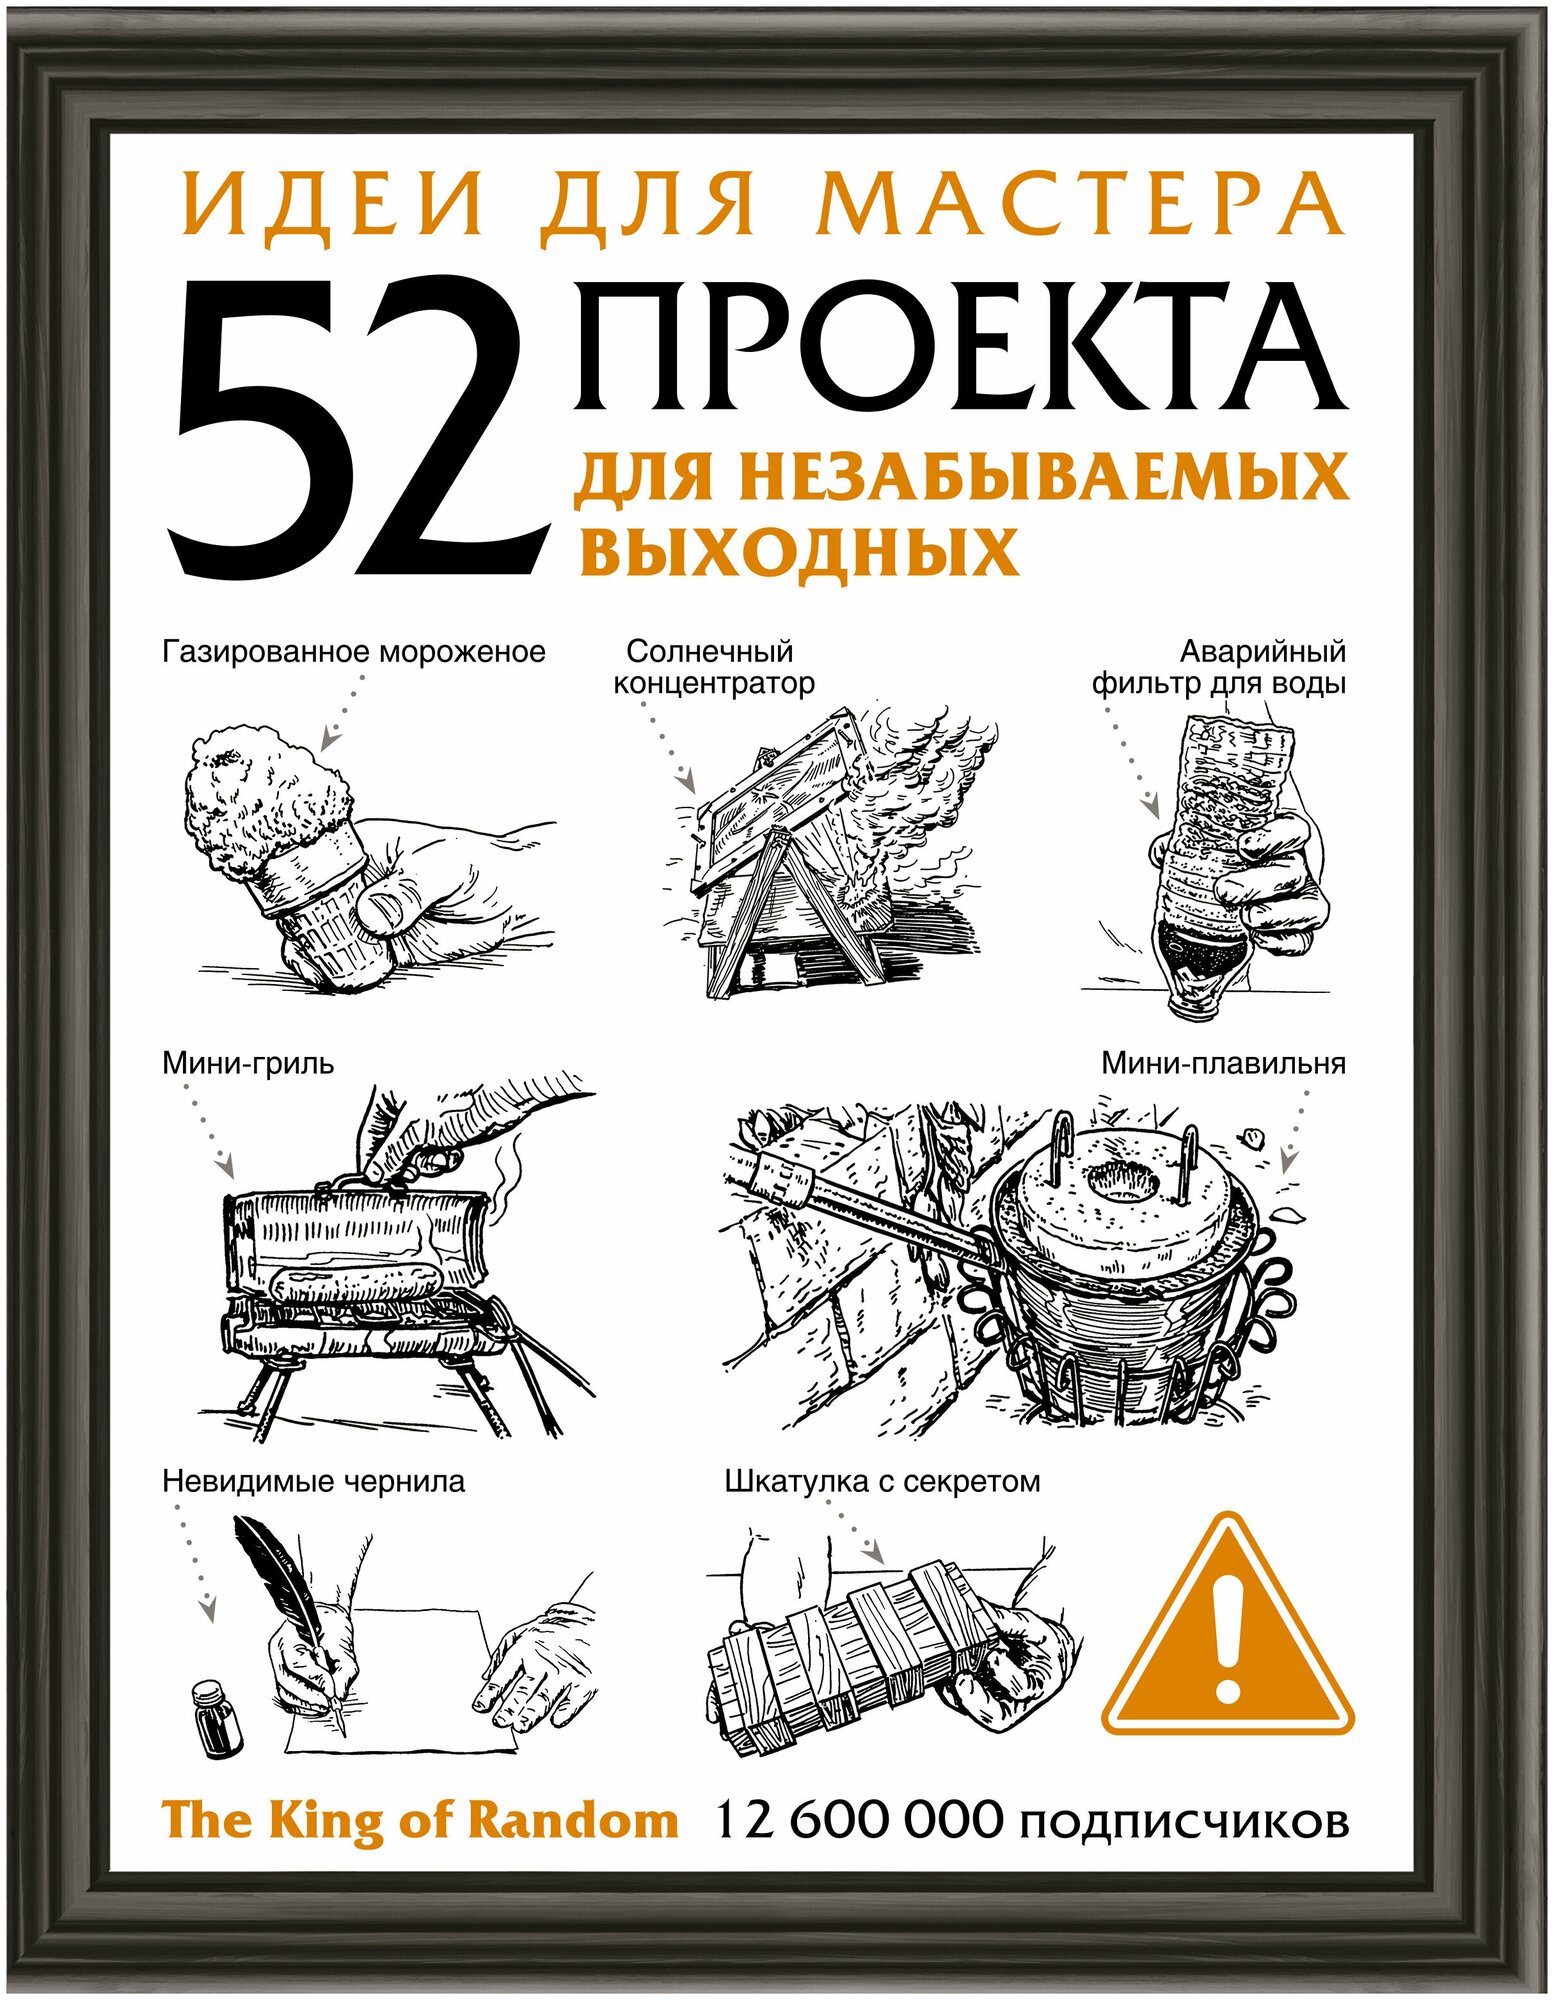 Идеи для мастера 52 проекта для незабываемых выходных Энциклопедия Чернышева Н 12+